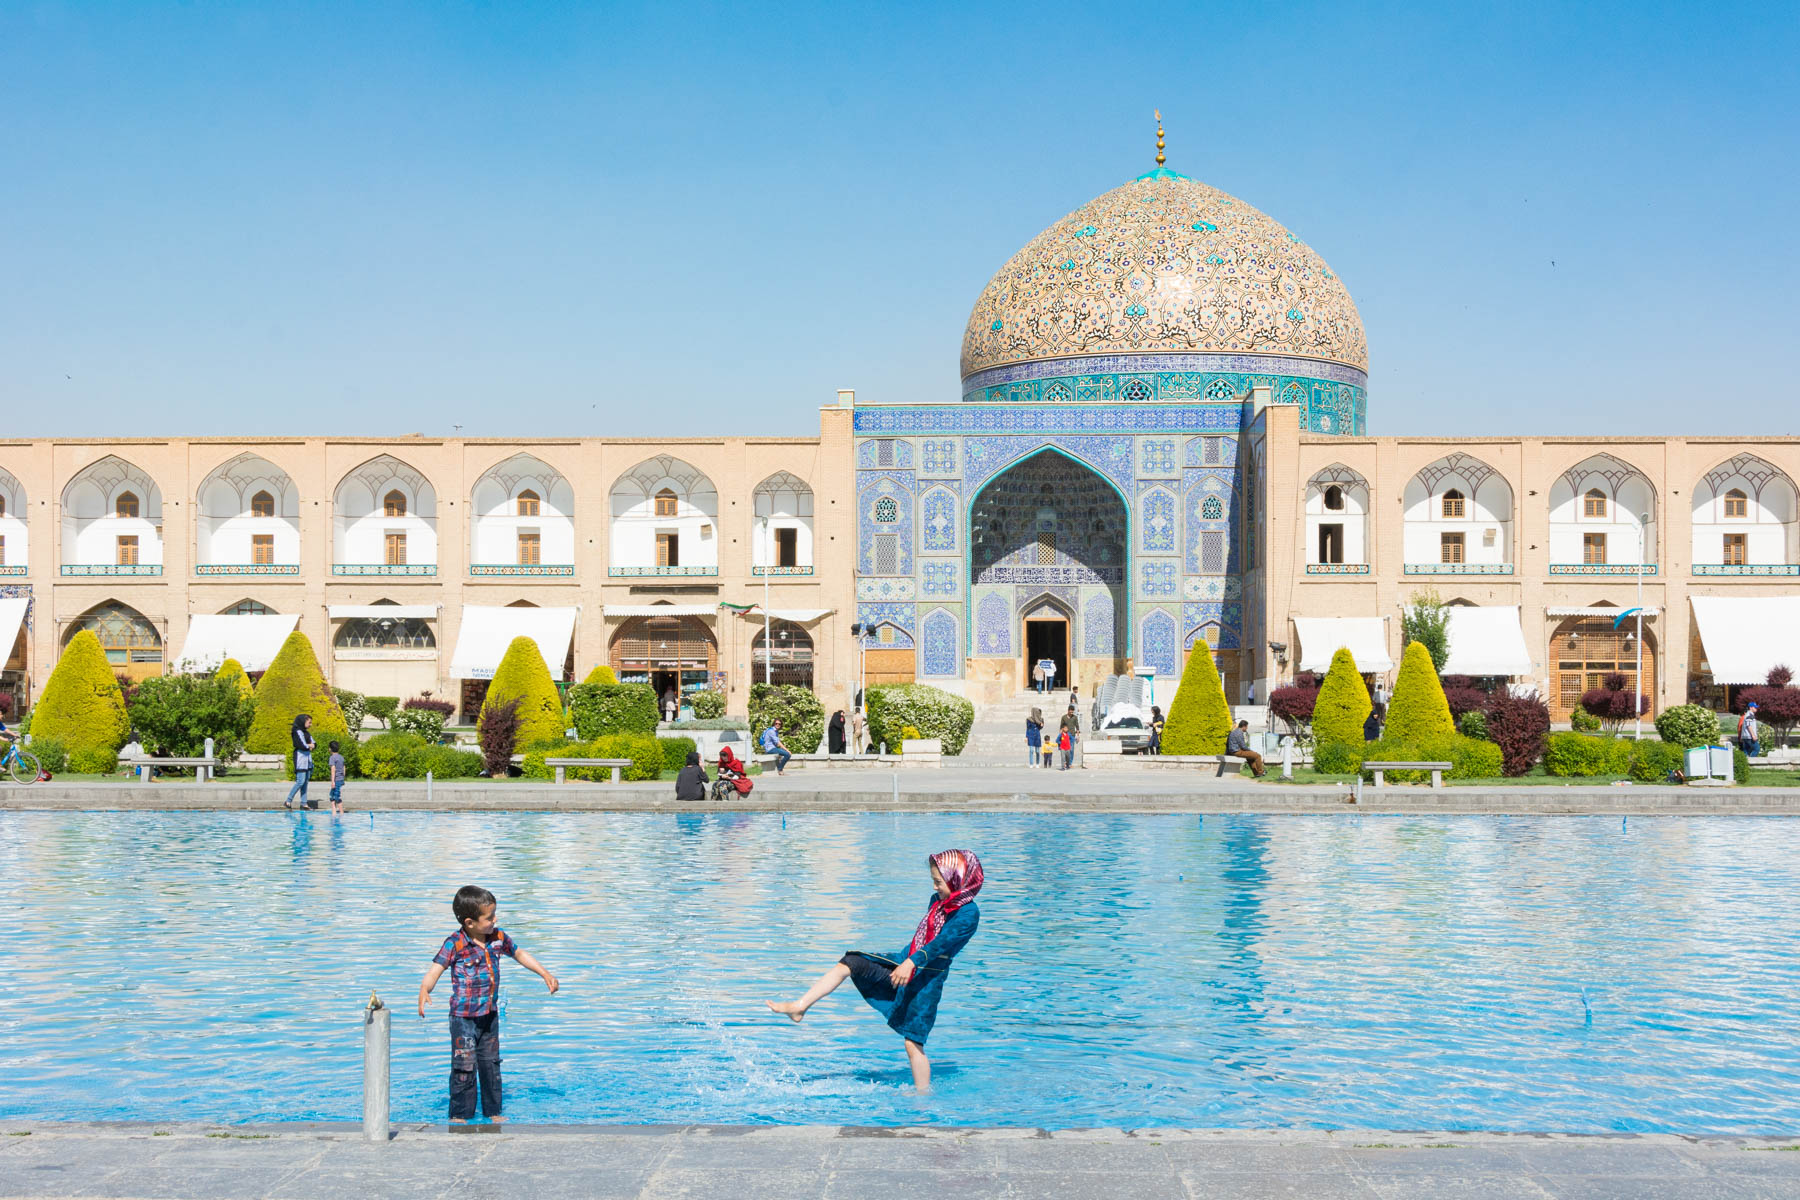 Imam Square in Esfahan, Iran